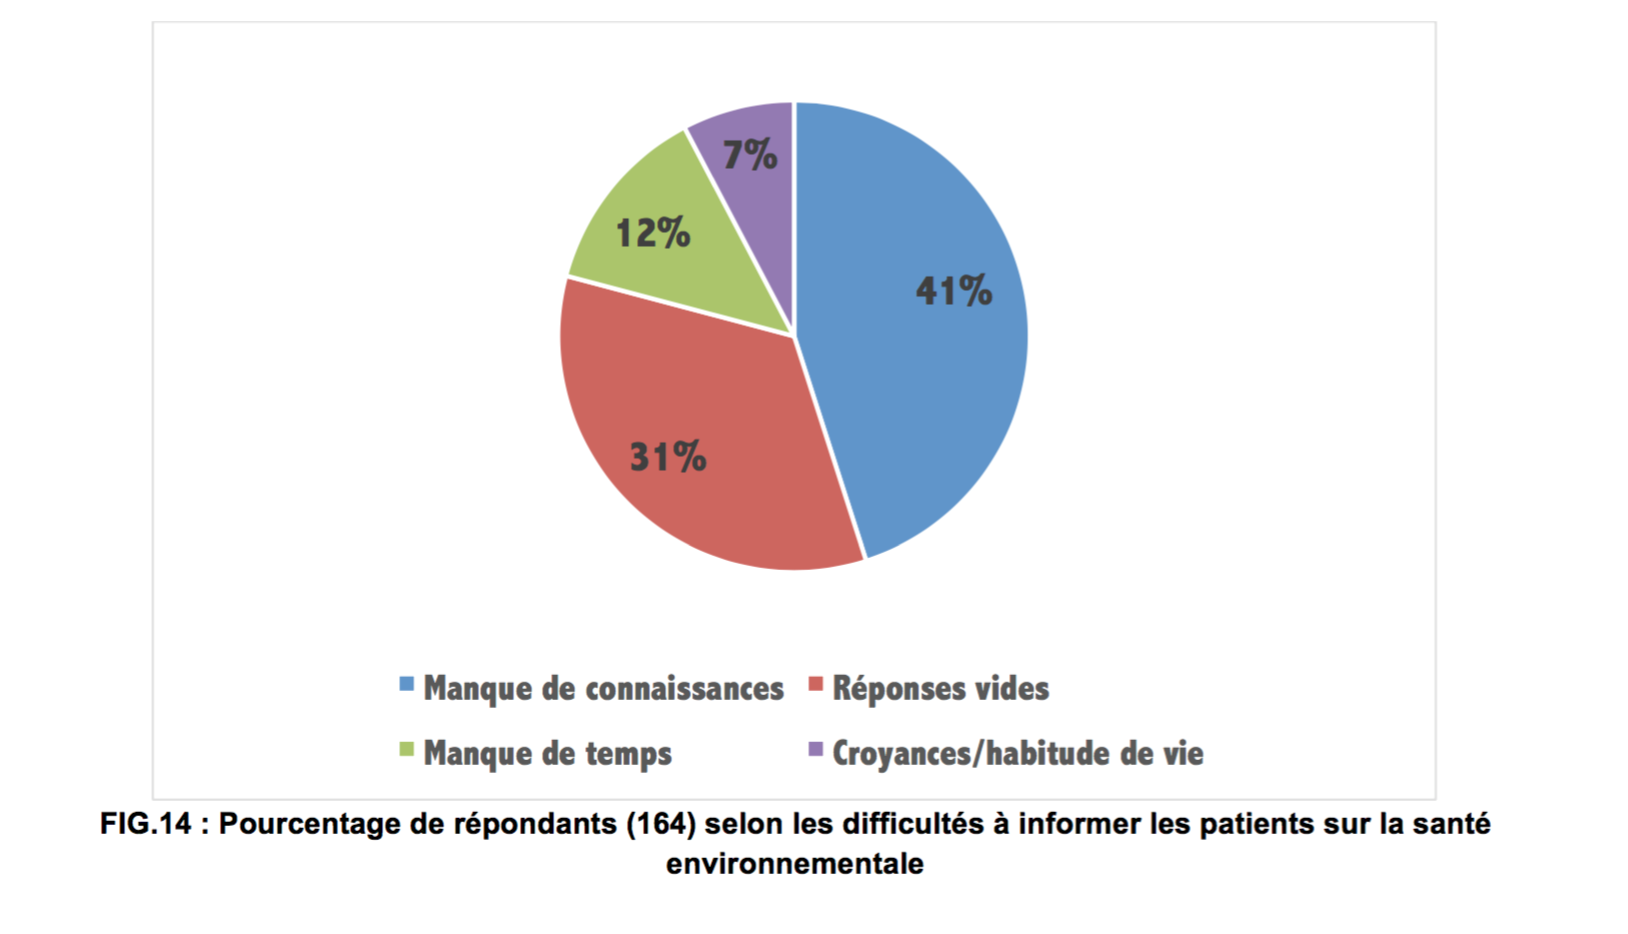 Les professionnels citent en premier lieu le manque de connaissance (41% des répondants) pour expliquer les difficultés à informer les patients @ ARS Nouvelle-Aquitaine